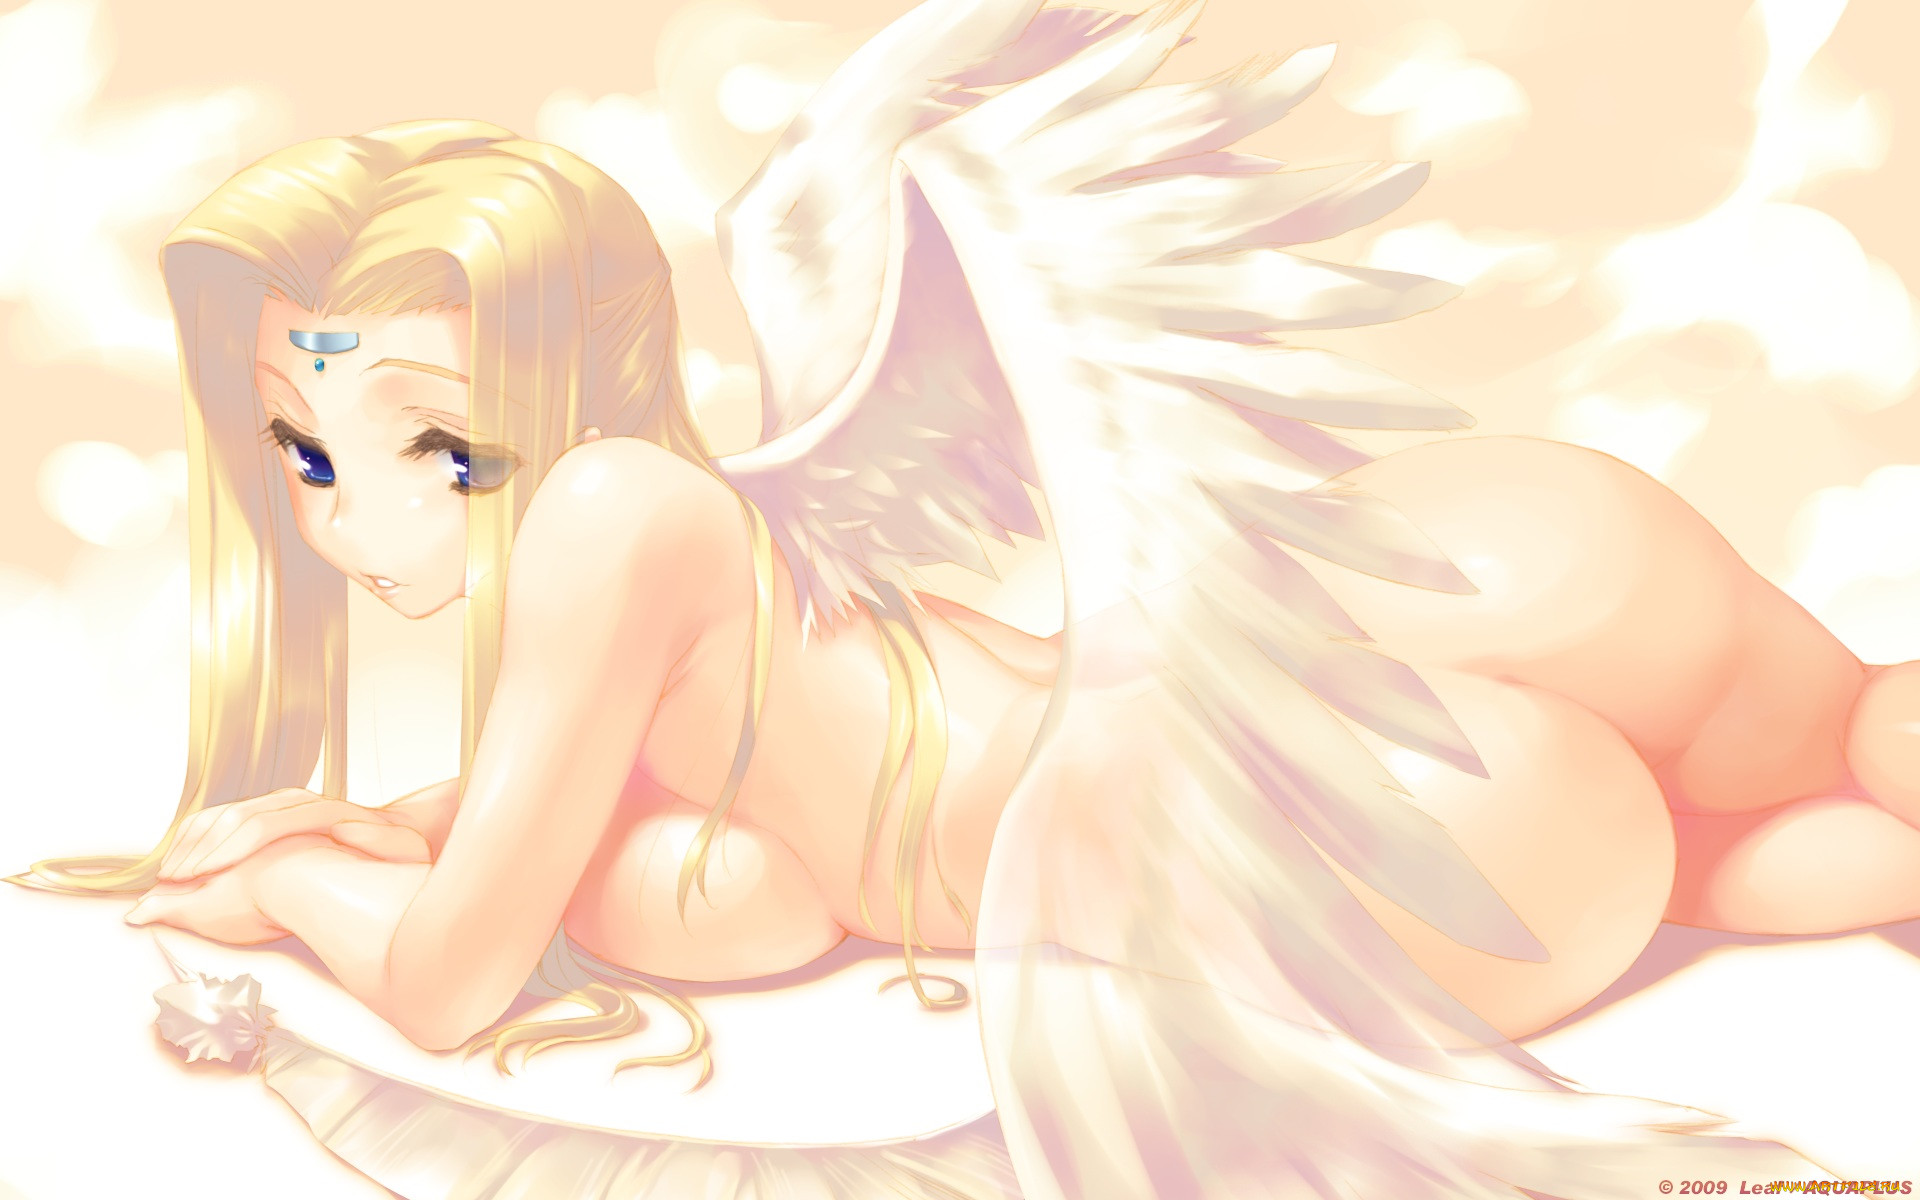 Sexy angel girl nacked